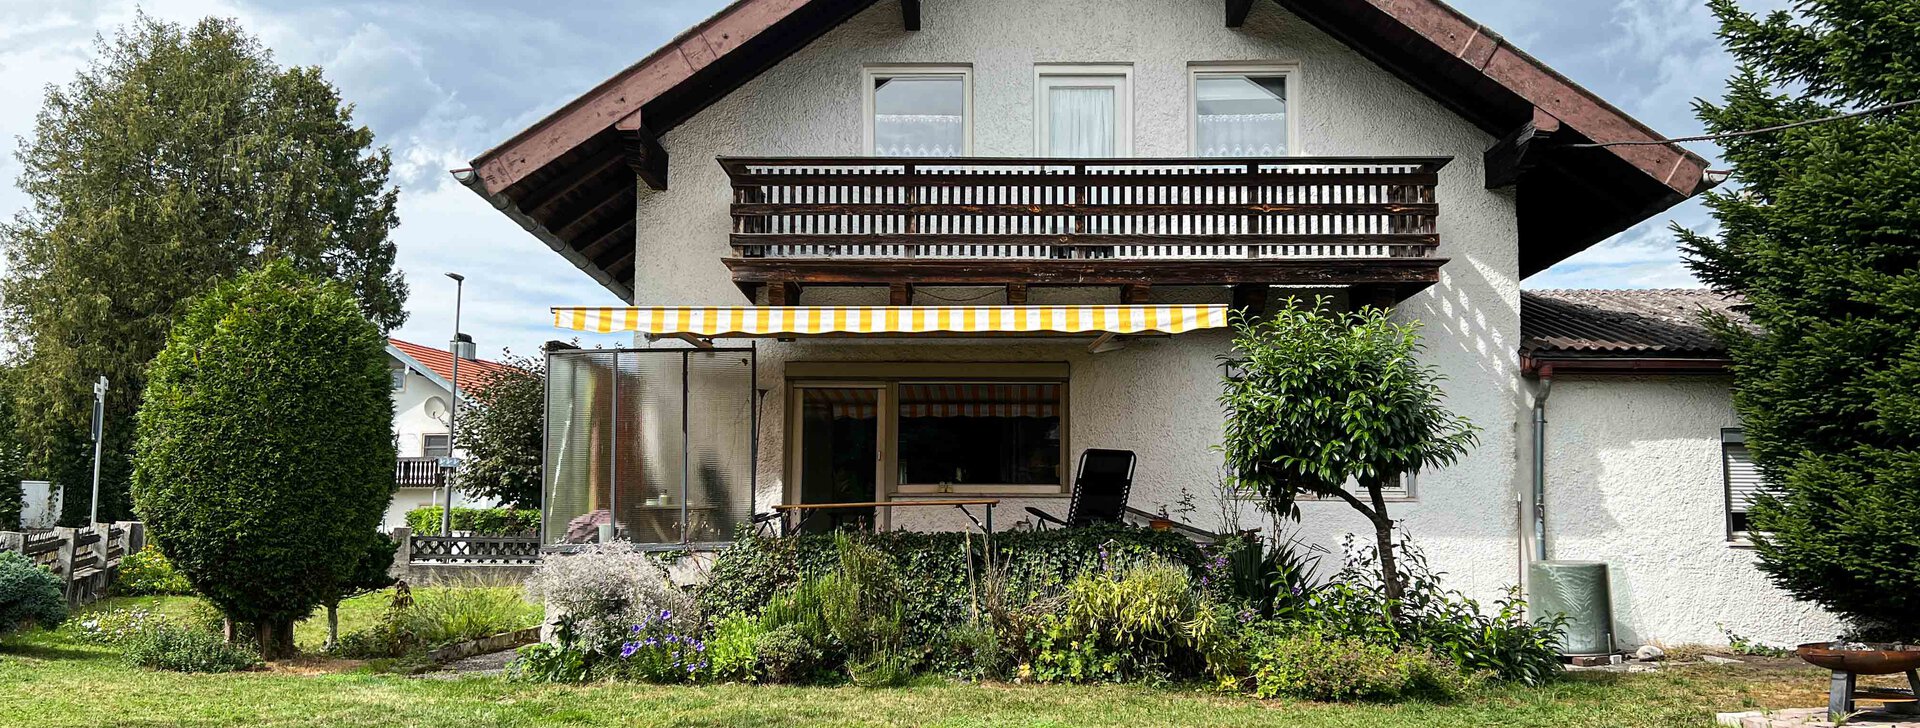 Außenansicht, Einfamilienhaus in Altenmarkt, Immobilie kaufen, Altenmarkt | © HausBauHaus GmbH